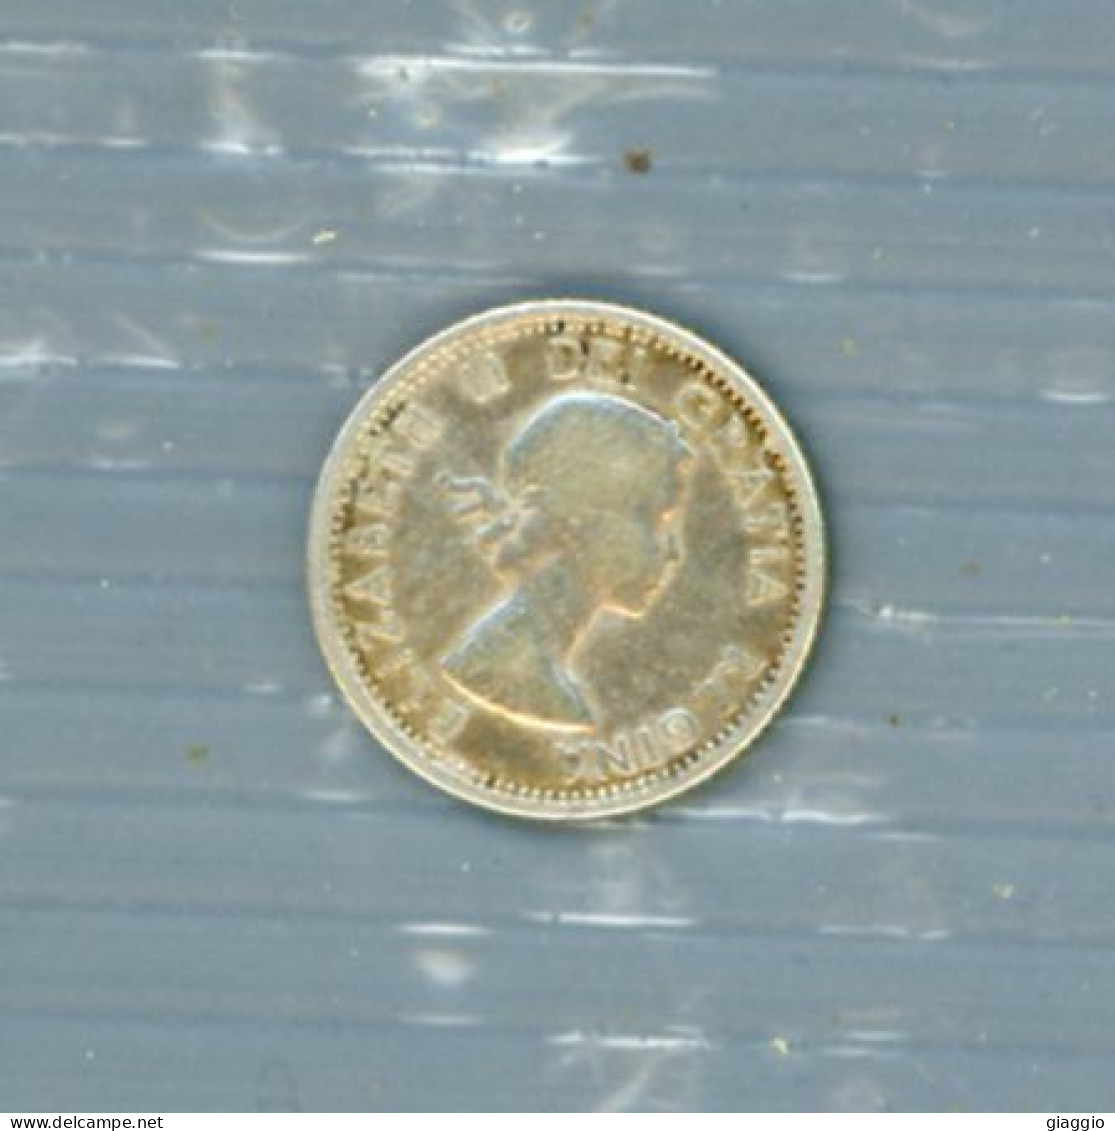 °°° Moneta N. 722 - Canada 10 Cents 1960 Silver °°° - Canada